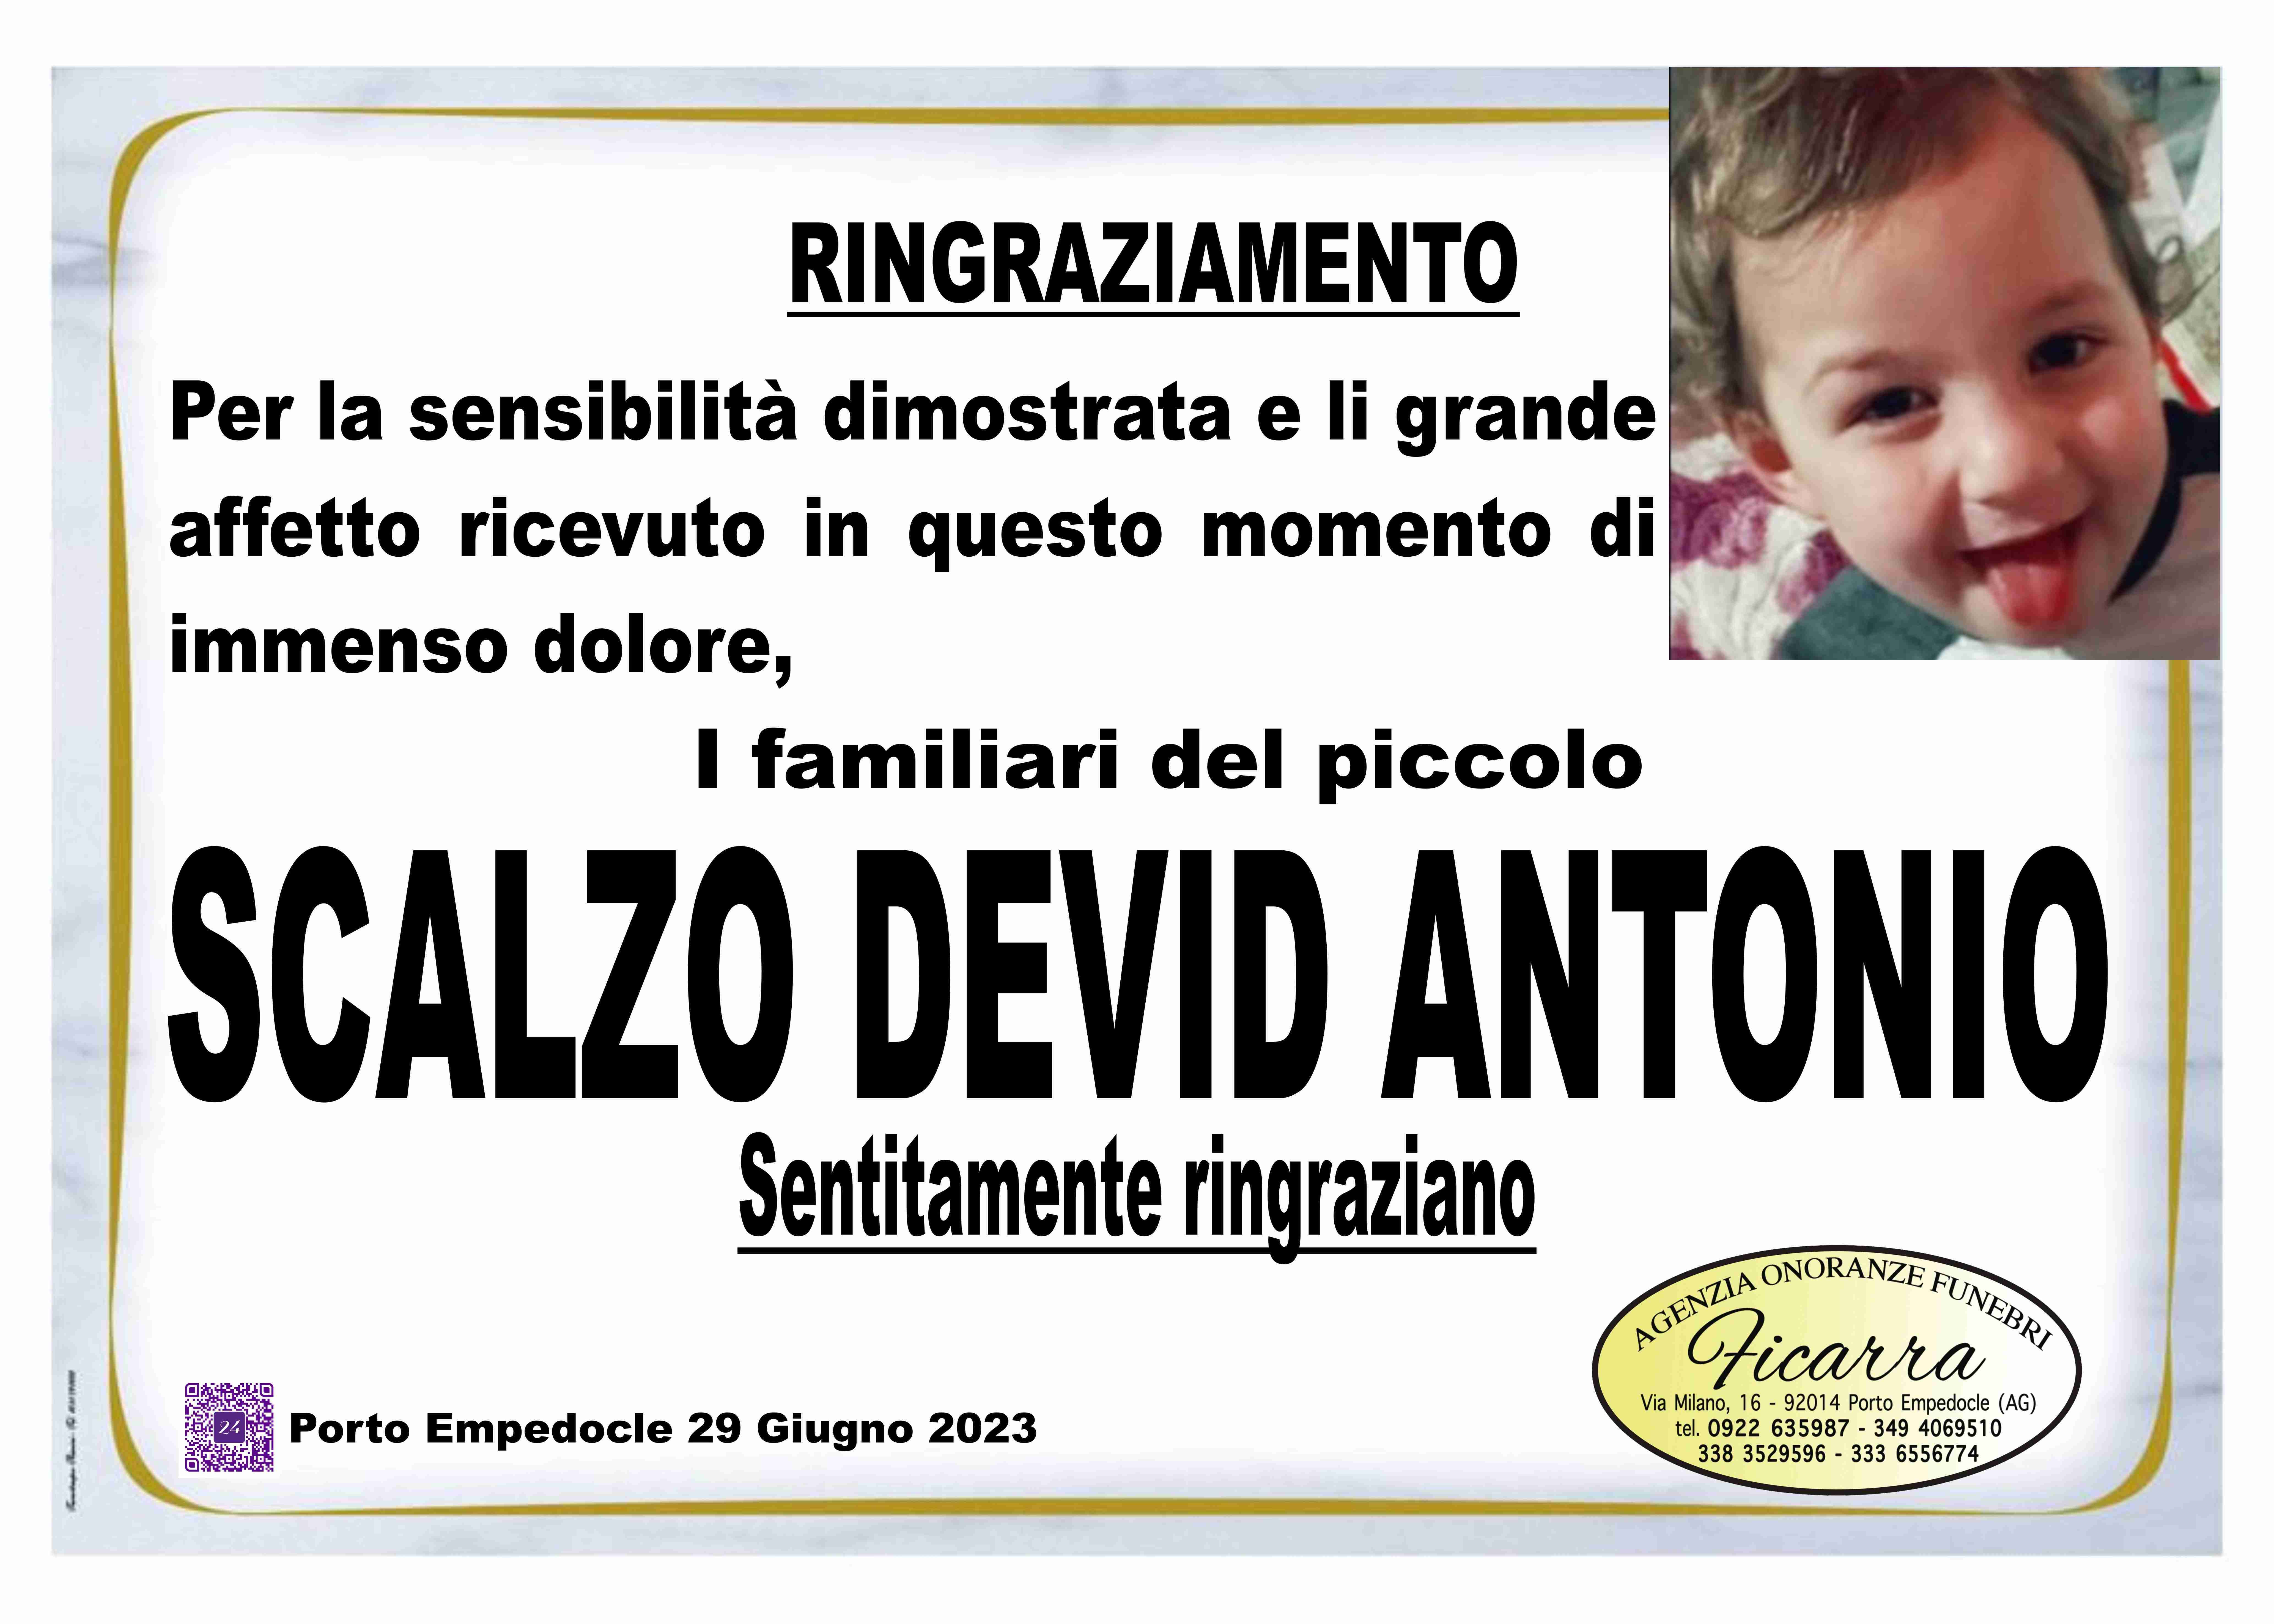 Devid Antonio Scalzo